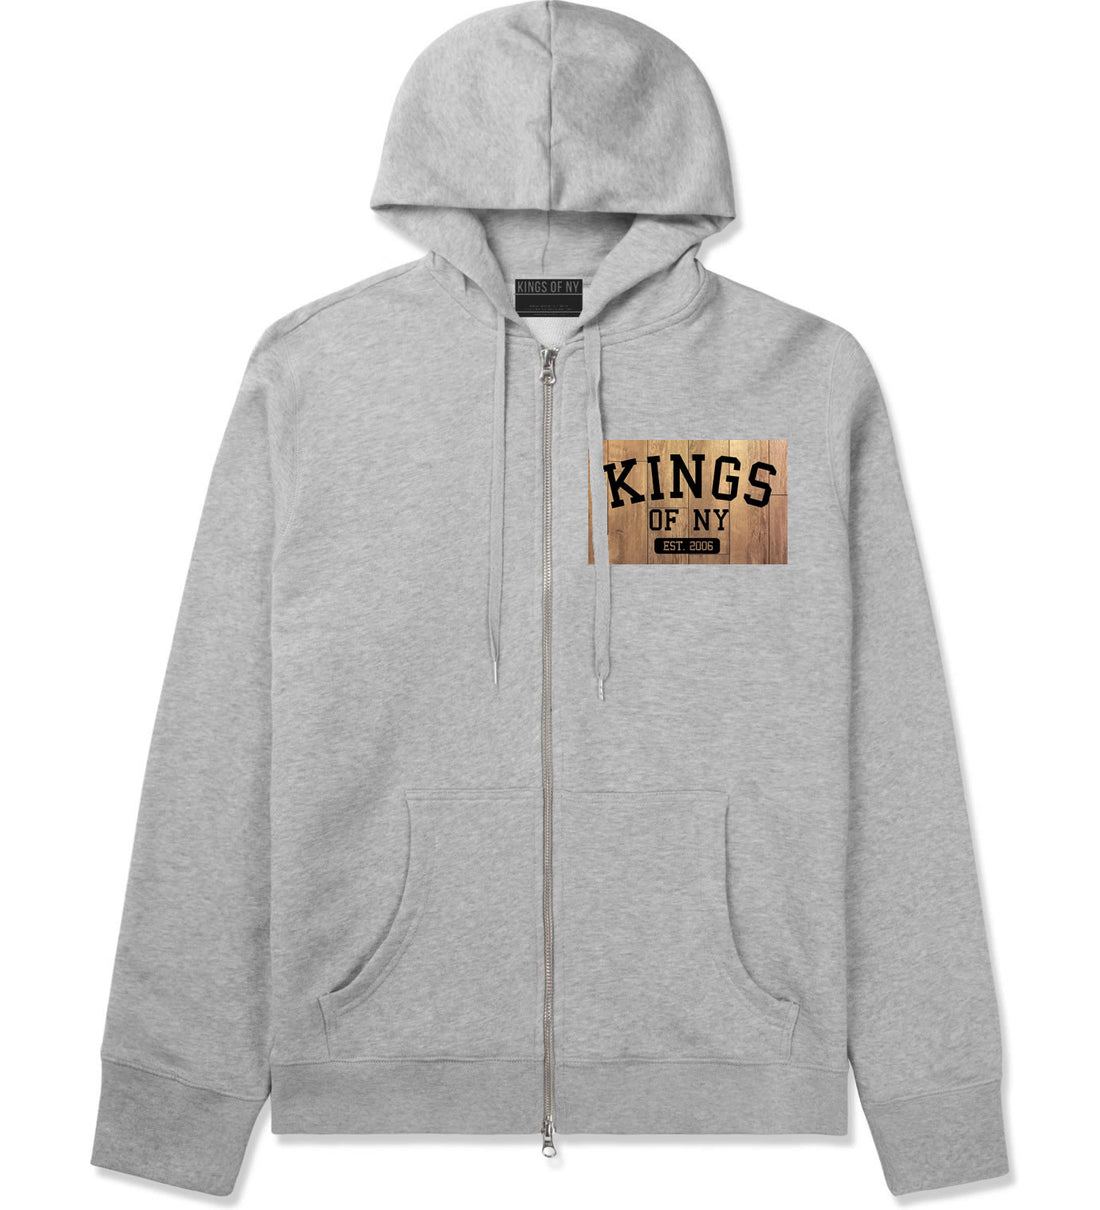 Hardwood Basketball Logo Zip Up Hoodie Hoody in Grey by Kings Of NY